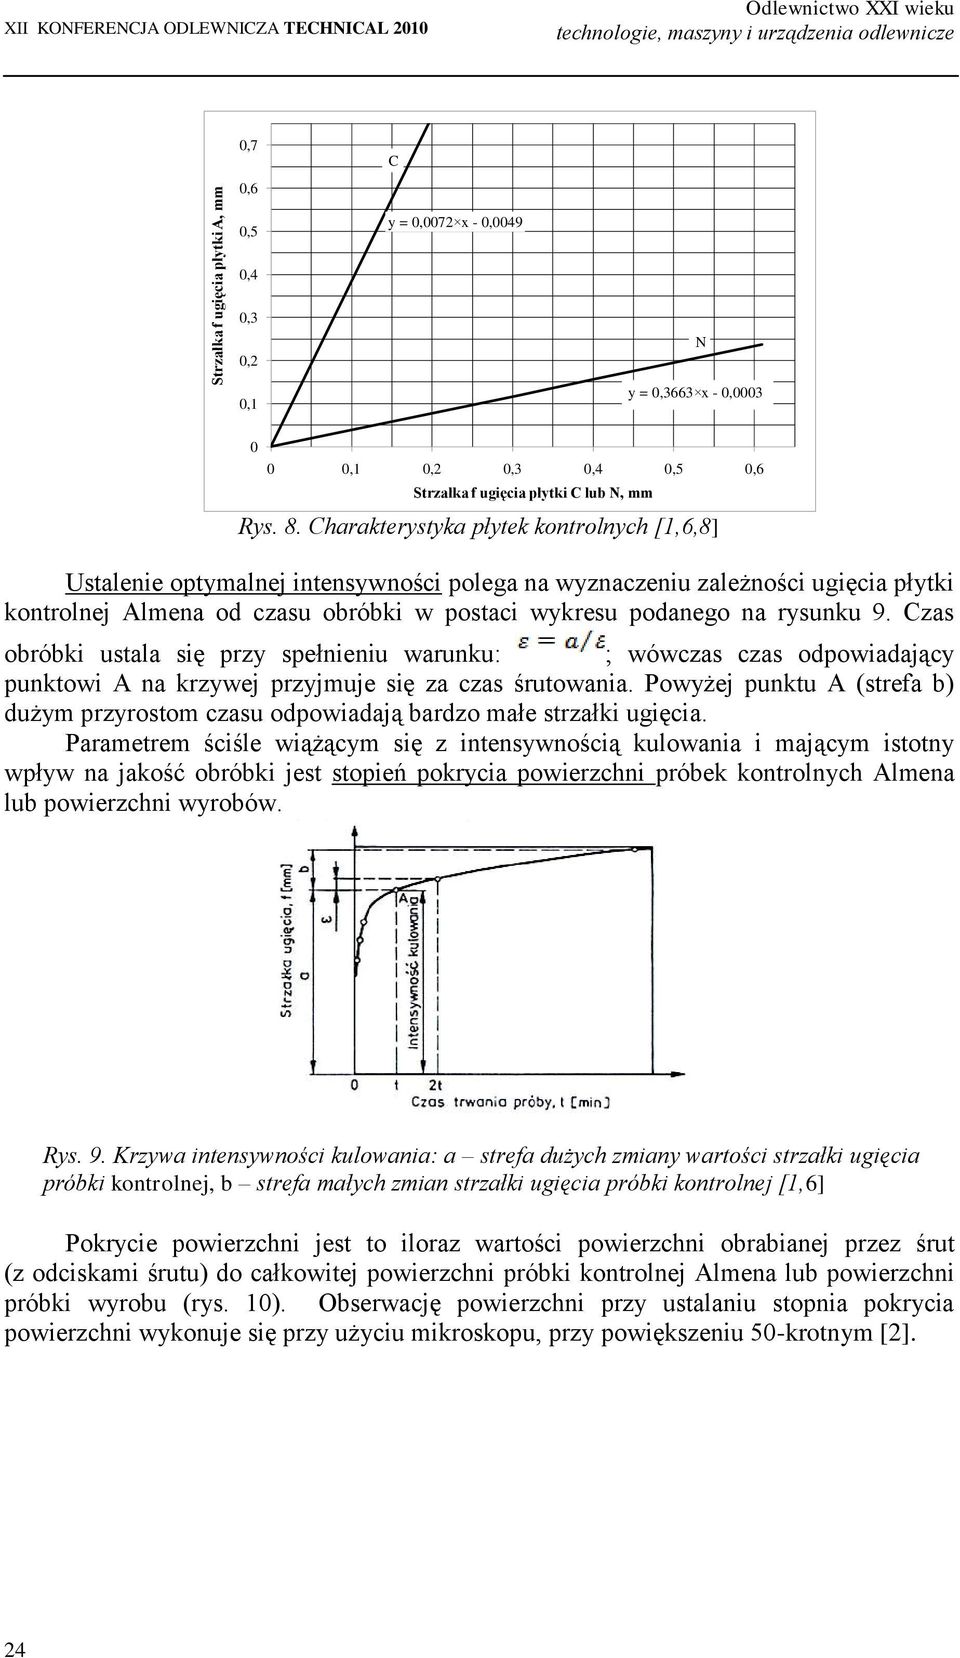 Charakterystyka płytek kontrolnych [1,6,8] Ustalenie optymalnej intensywności polega na wyznaczeniu zależności ugięcia płytki kontrolnej Almena od czasu obróbki w postaci wykresu podanego na rysunku